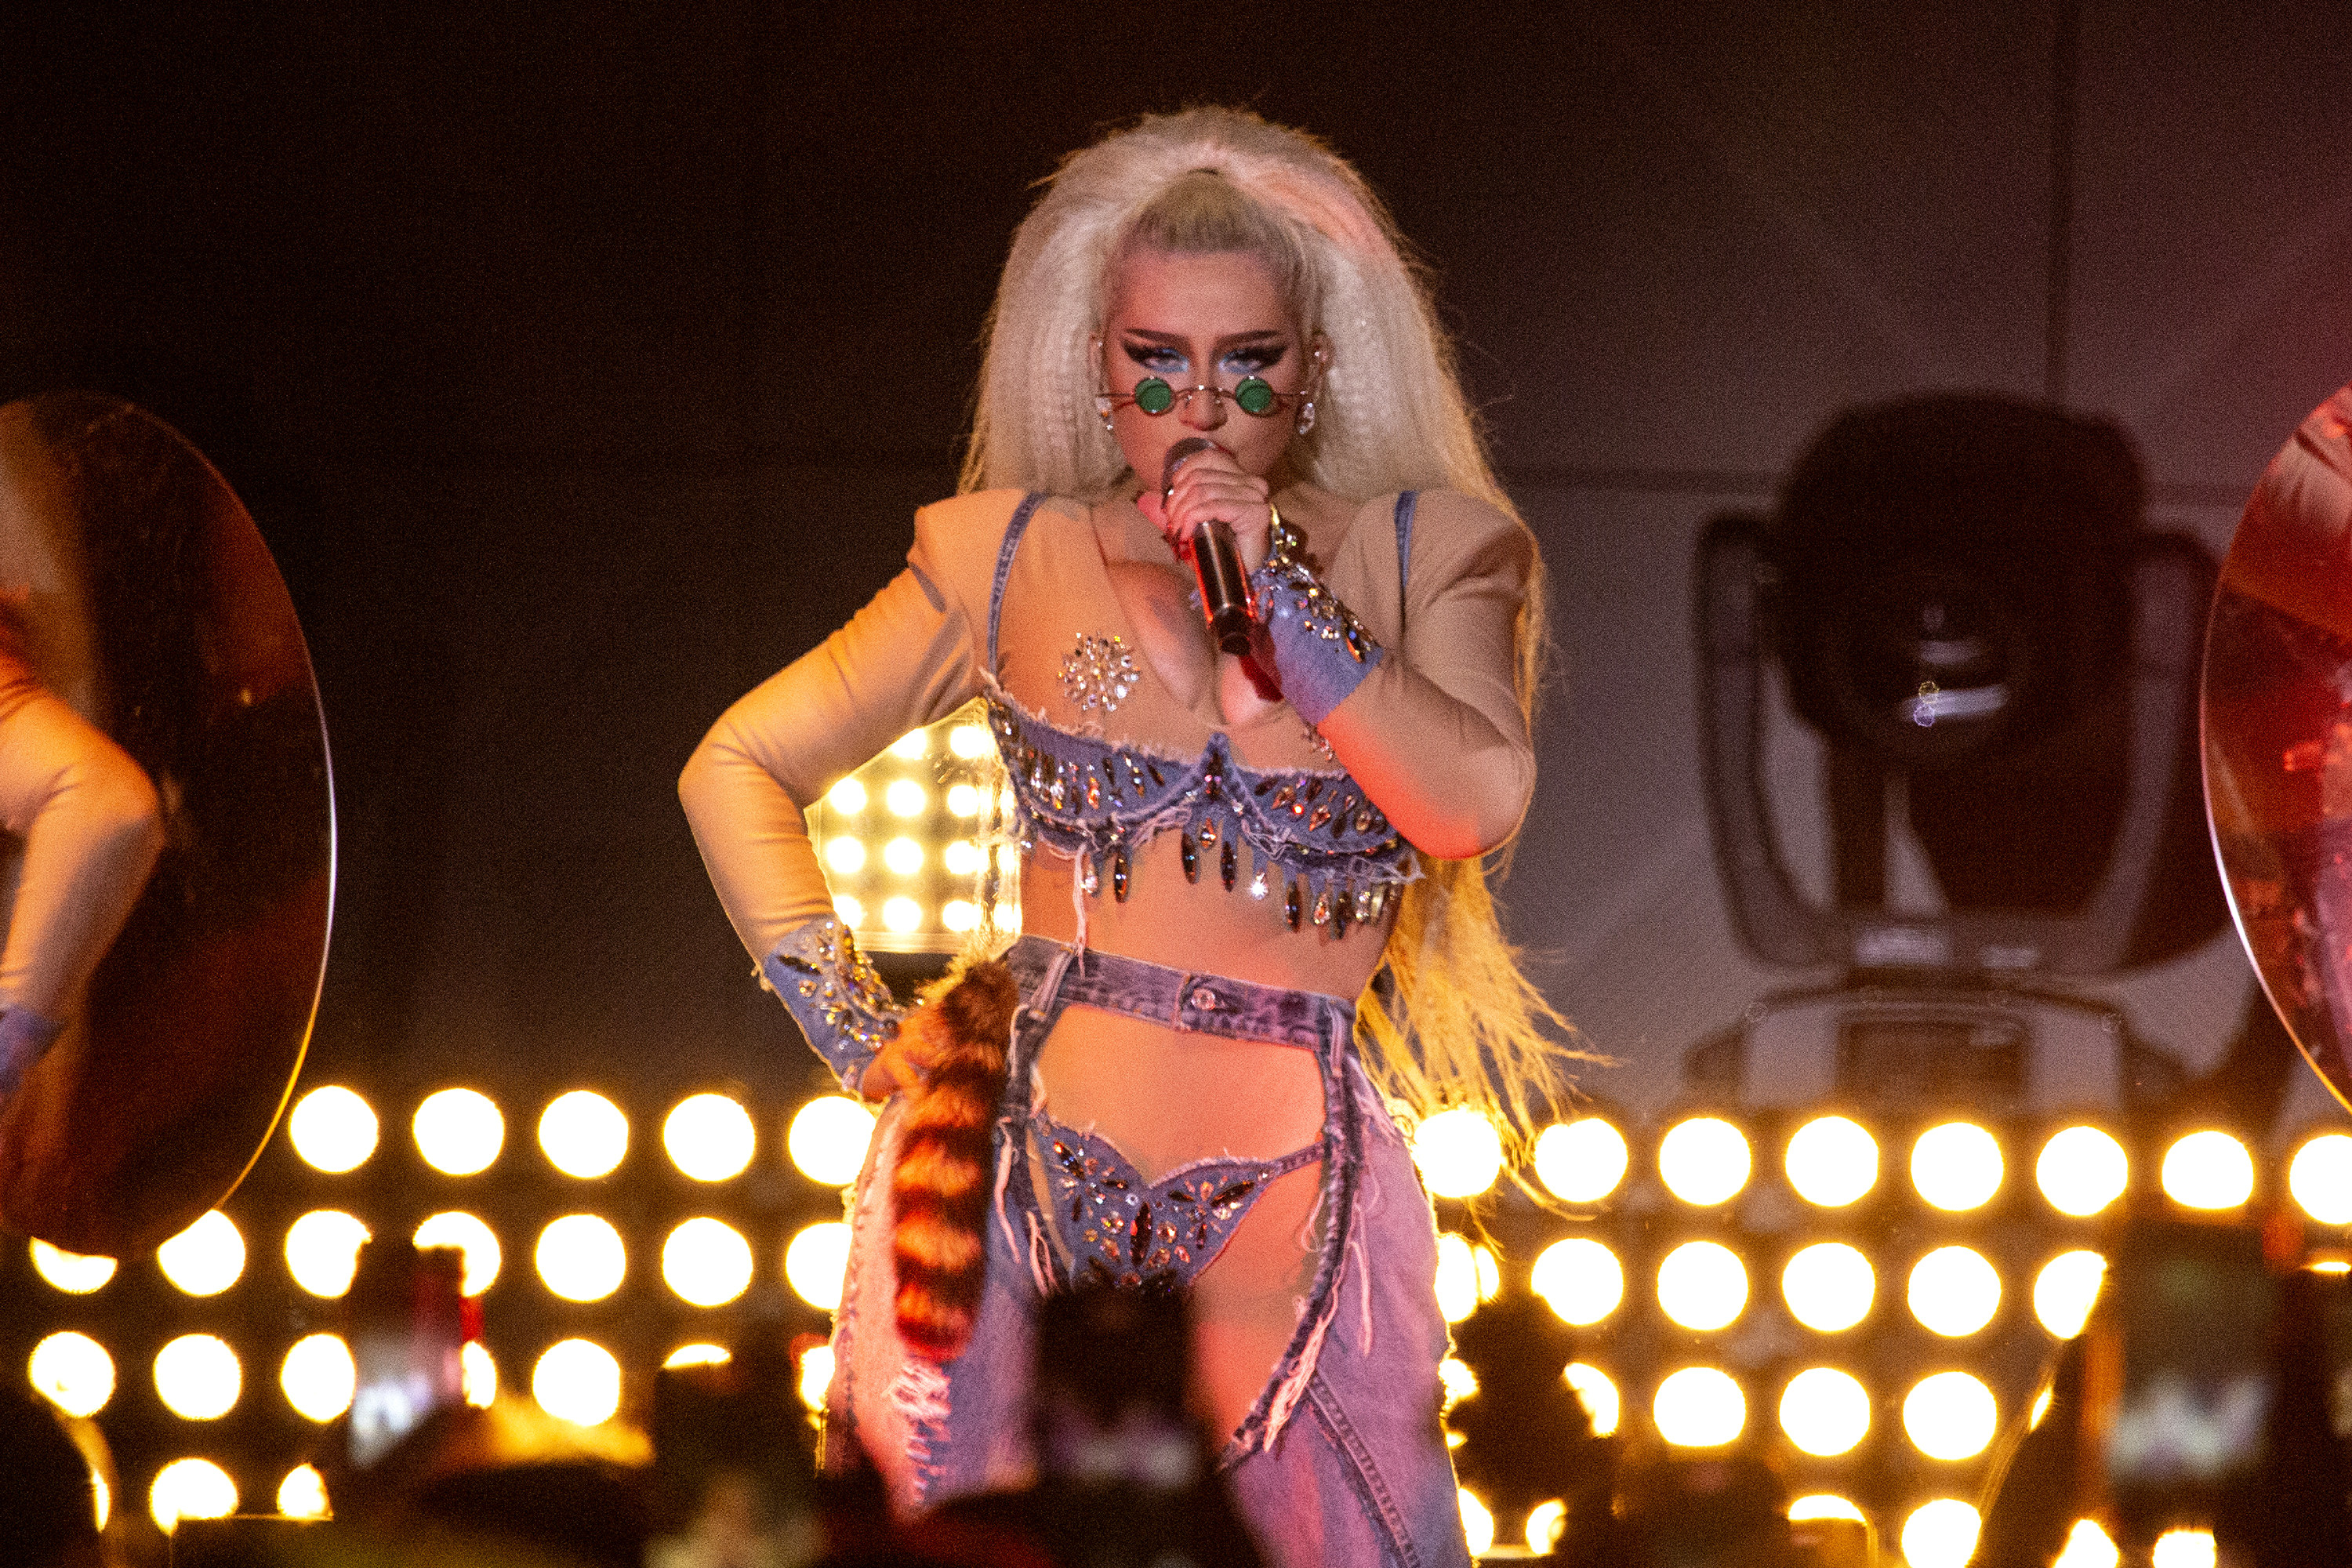 Christina Aguilera singing in a bodysuit